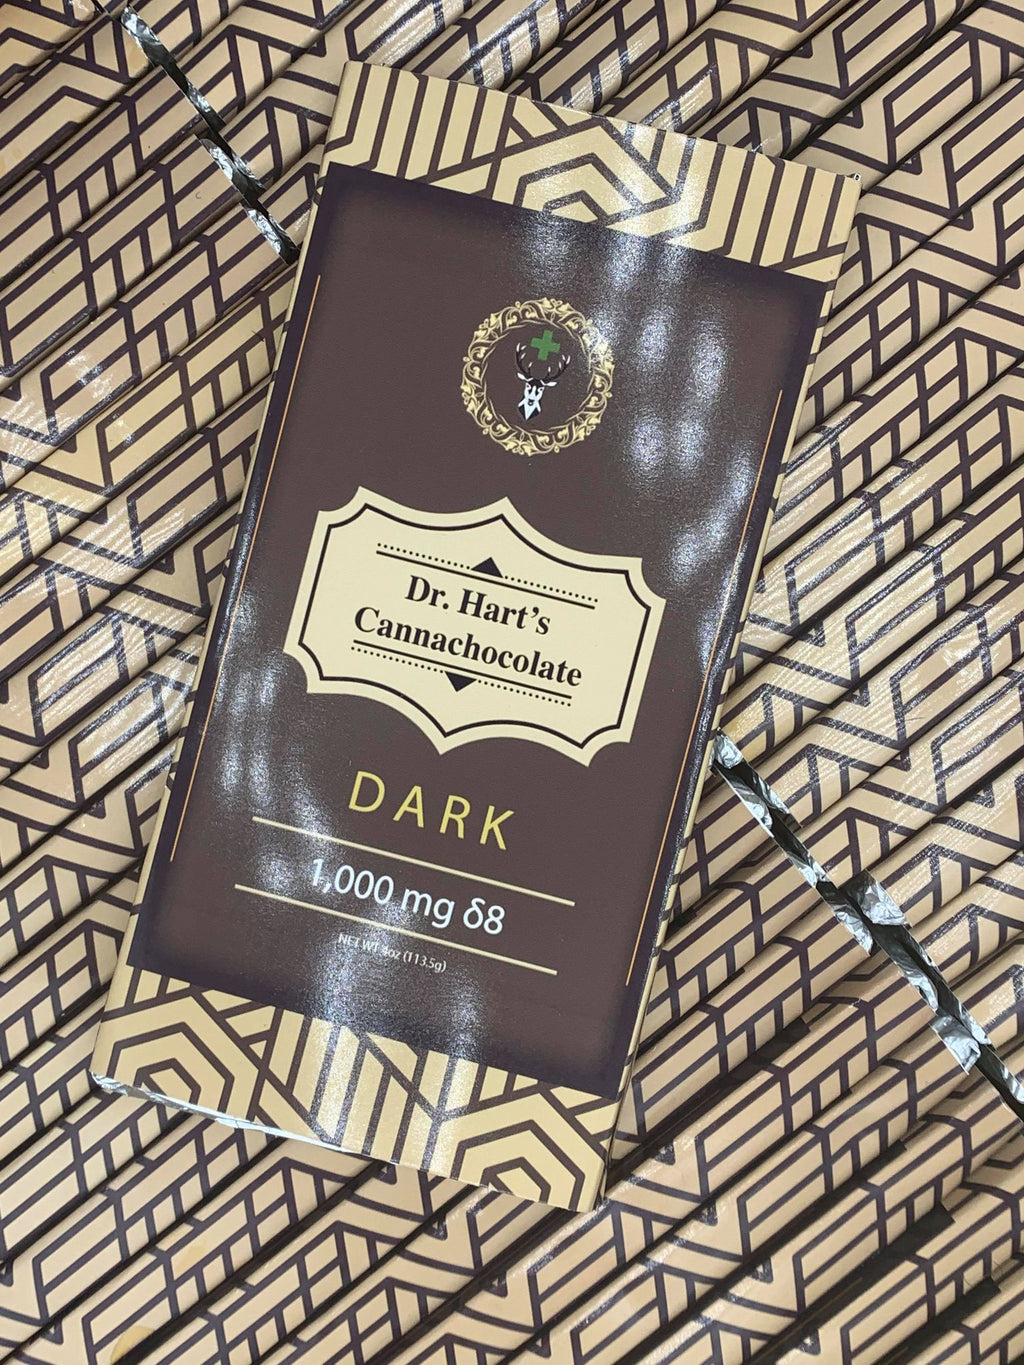 Delta 8 Dark Chocolate Bar